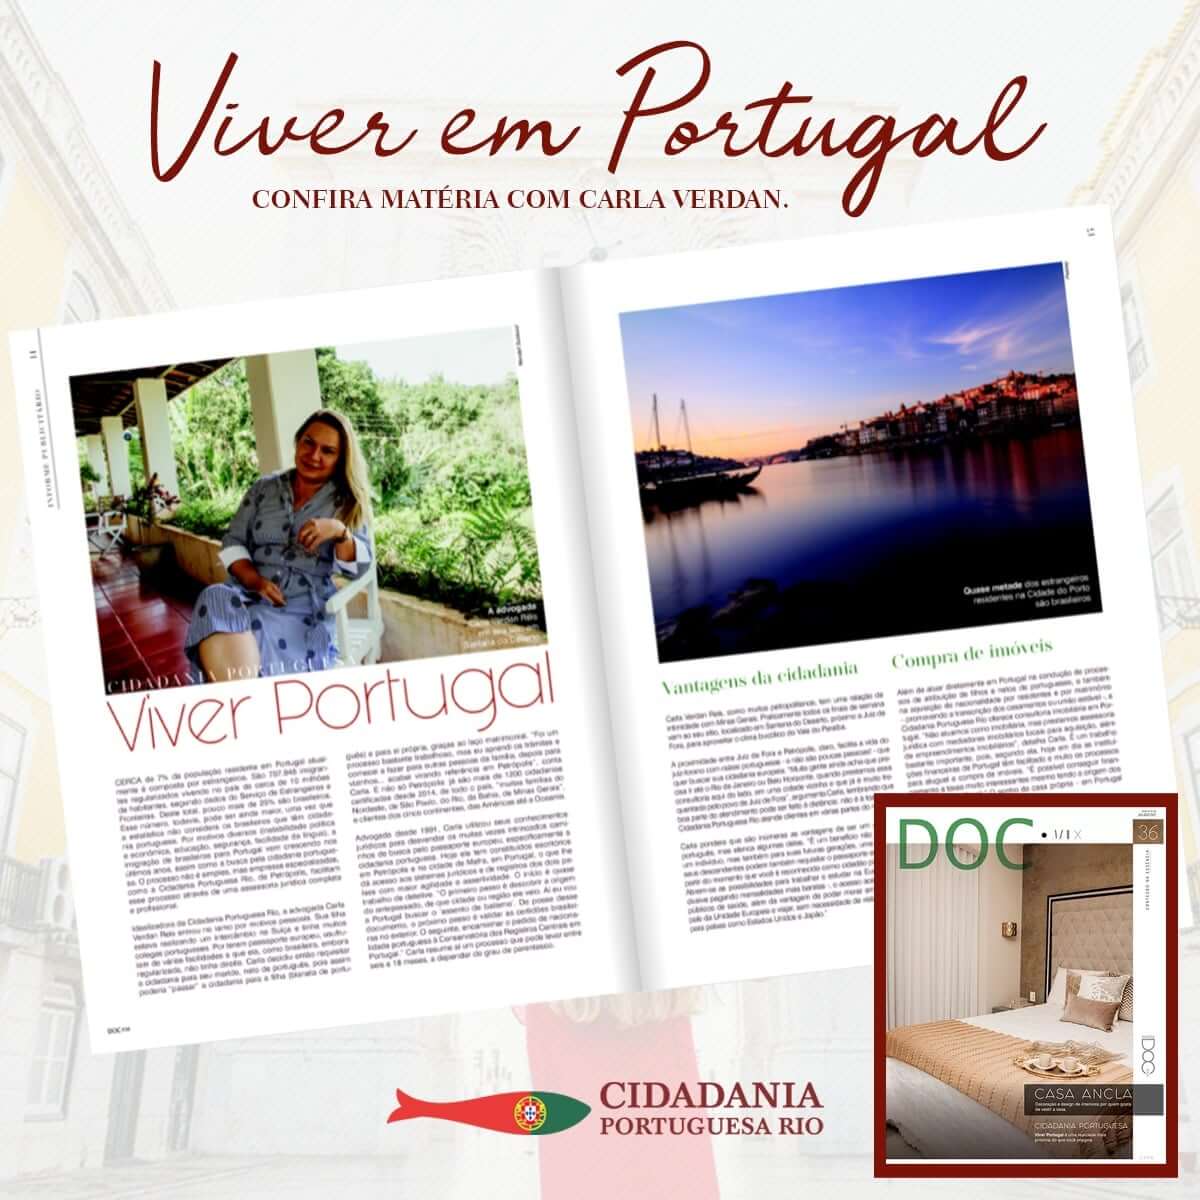 Matéria "Viver em Portugal", com Carla Verdan, publicada na Revista Doc